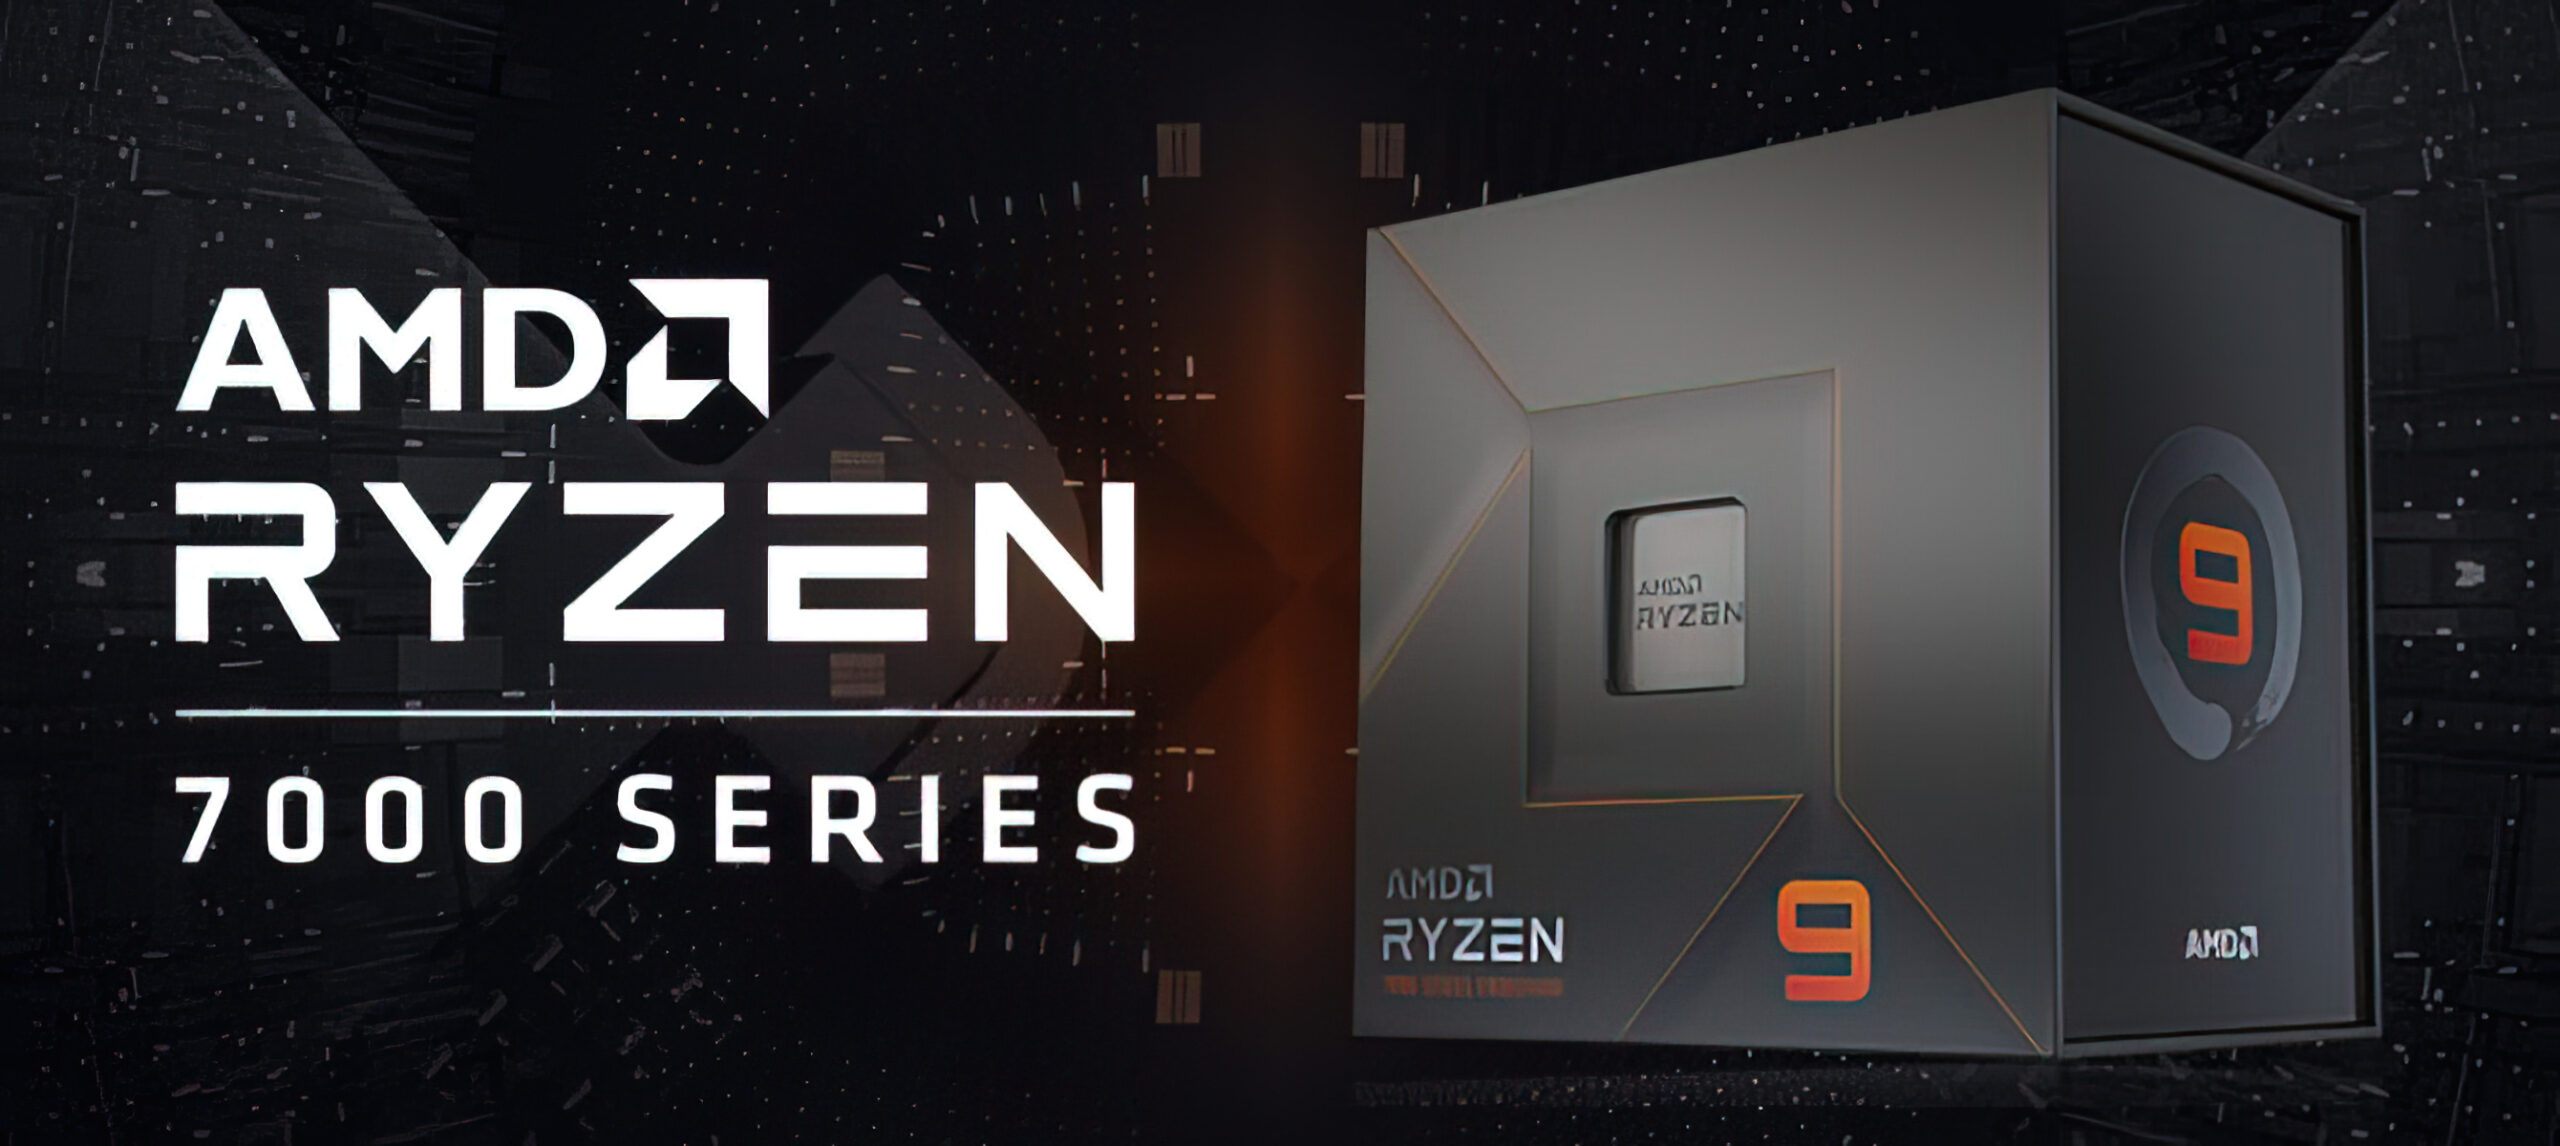 AMD obniżyło ceny procesorów Ryzen 7000 w Europie o 60-200 euro